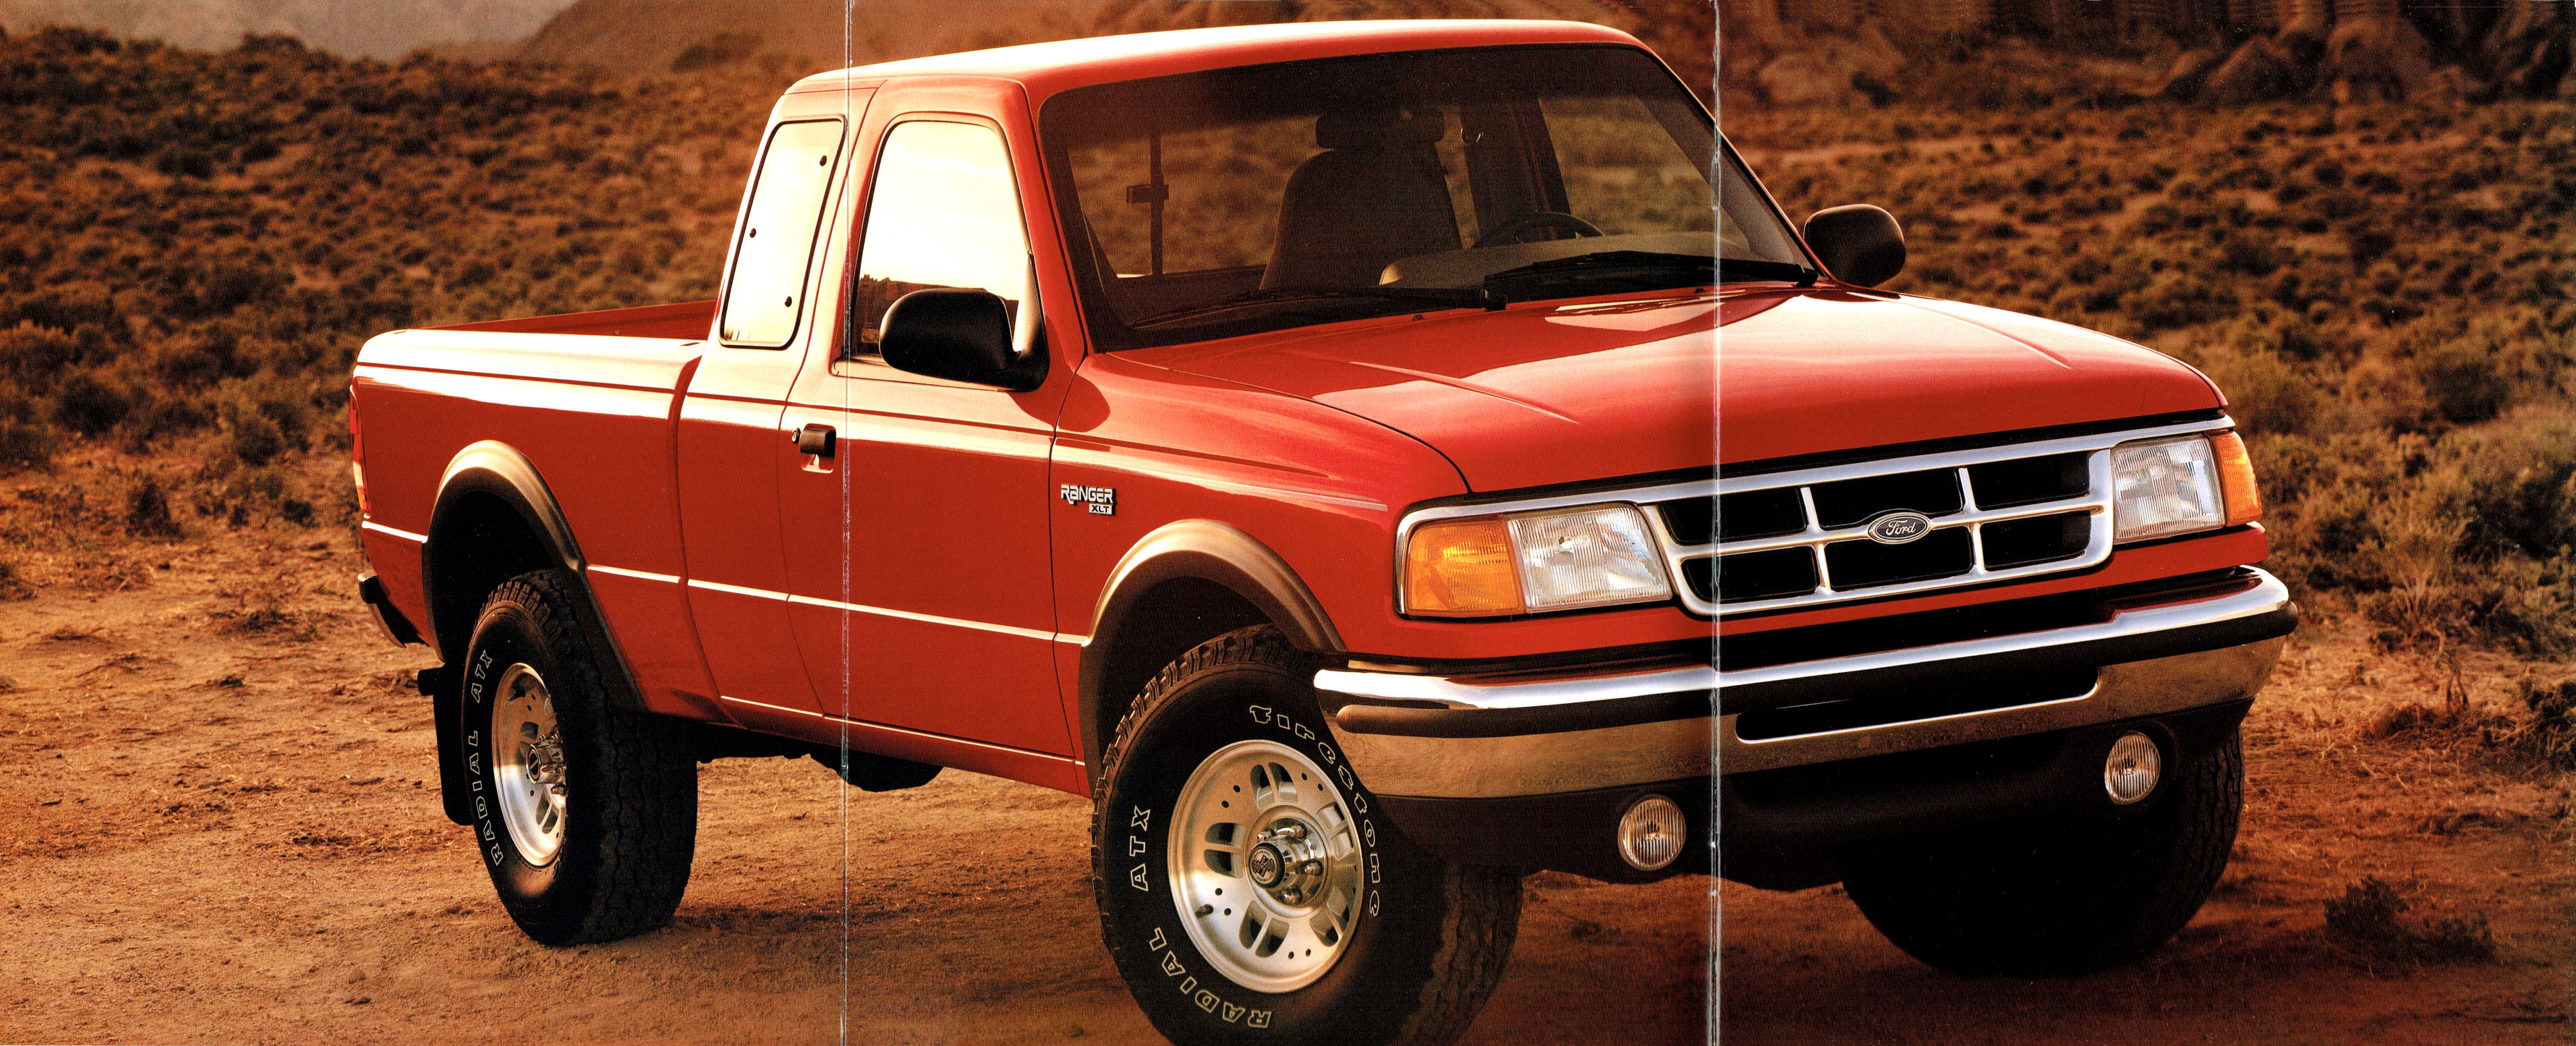 1994 Ford Ranger Pickup-03-04-05